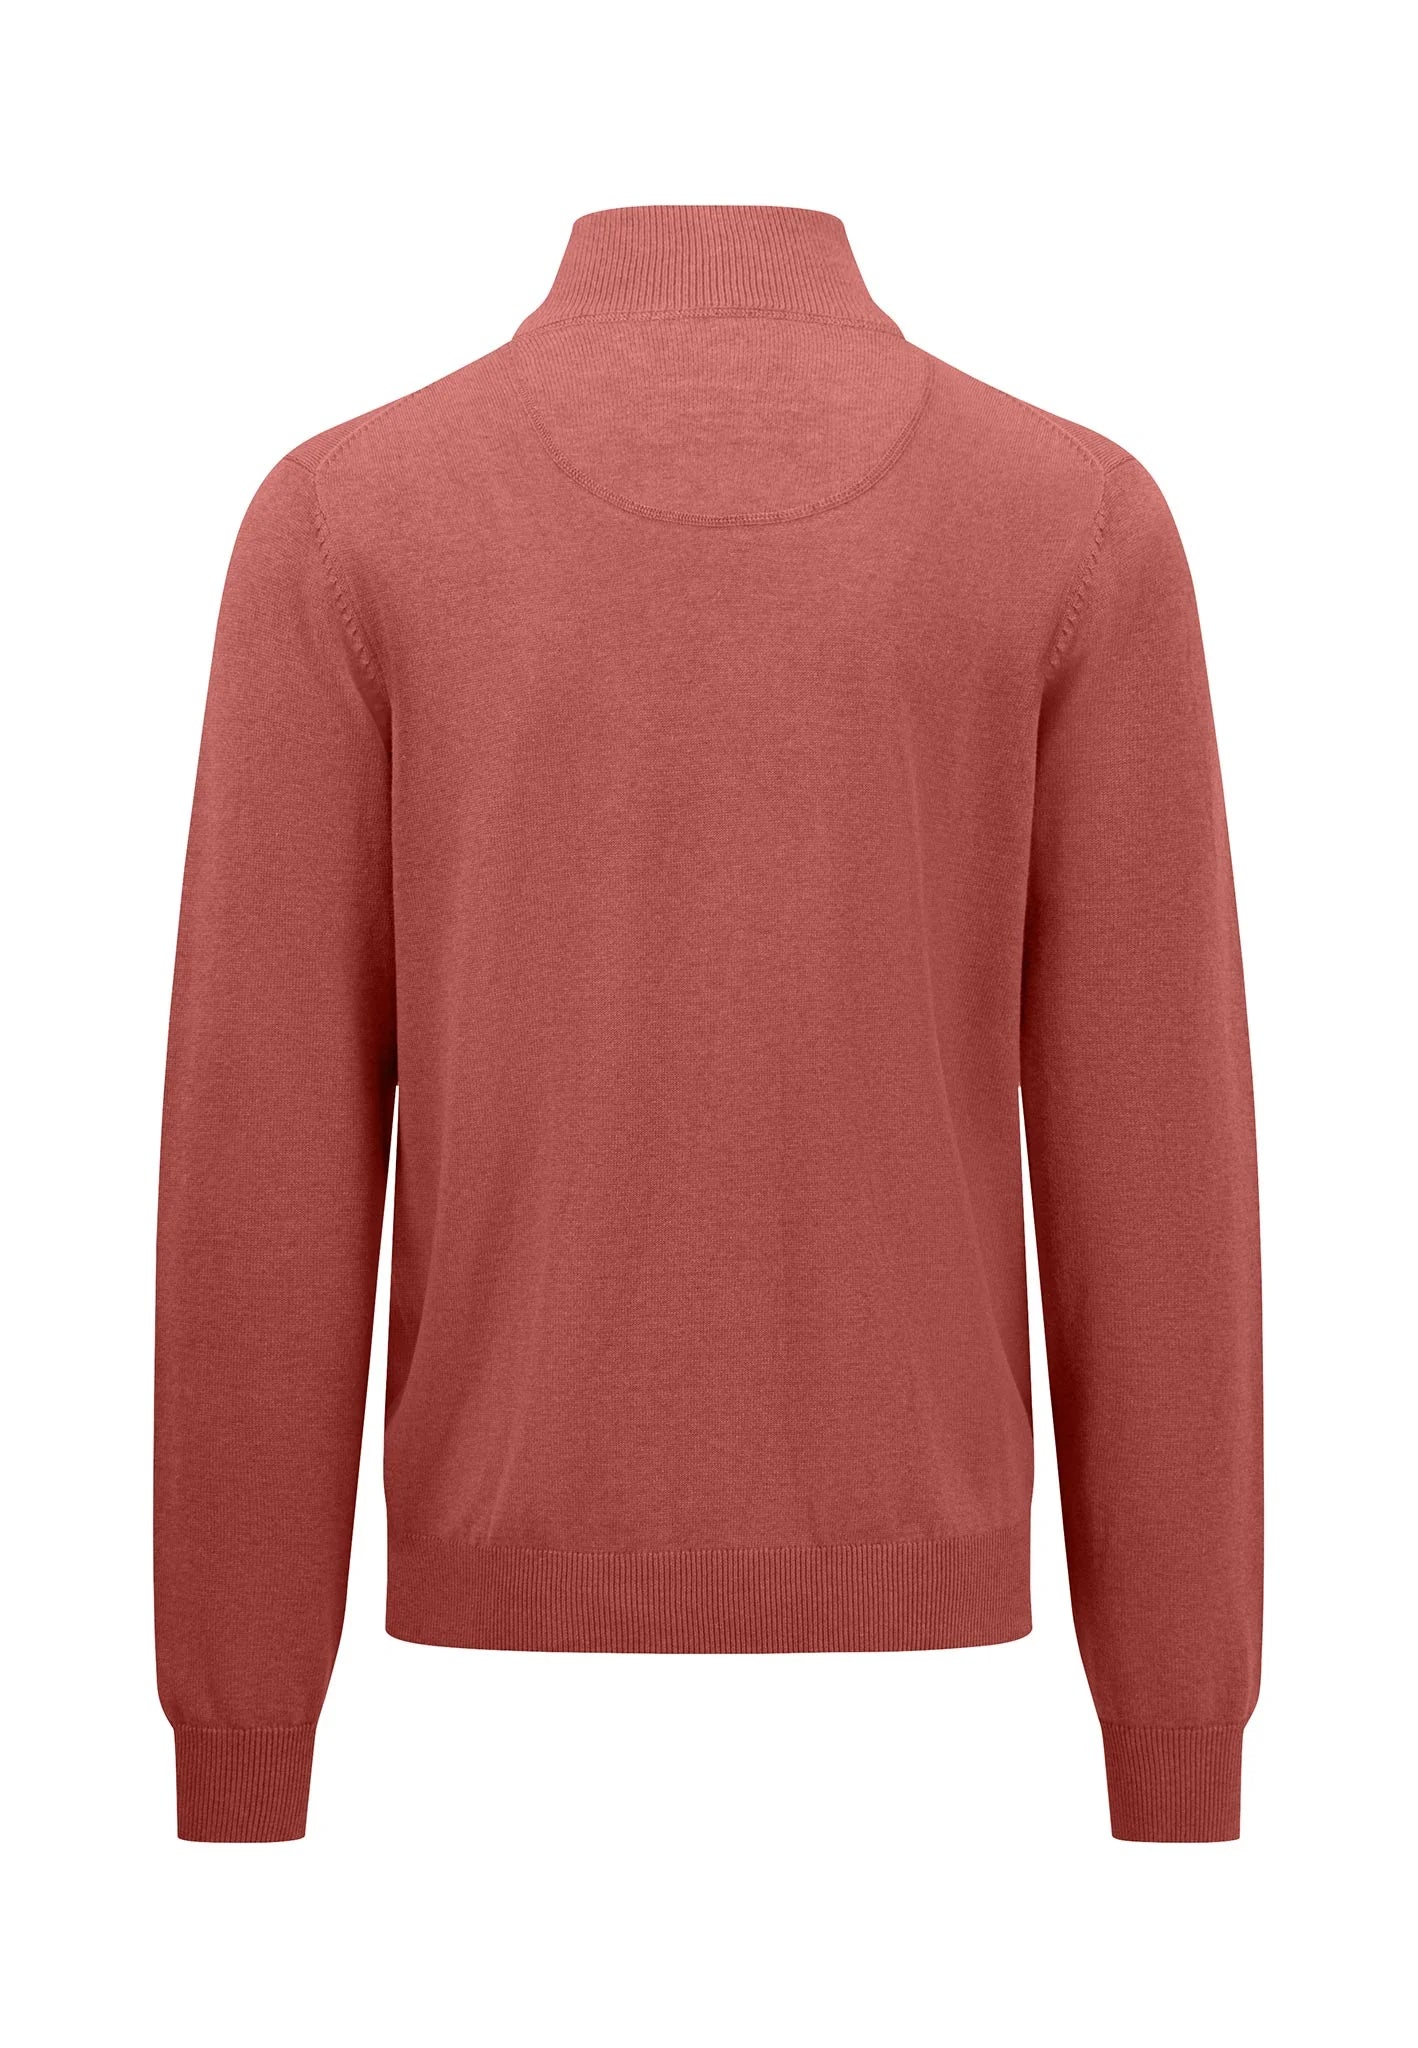 FYNCH HATTON Troyer 1/4 Zip Sweatshirt - Men's Soft Cotton – Orient Red